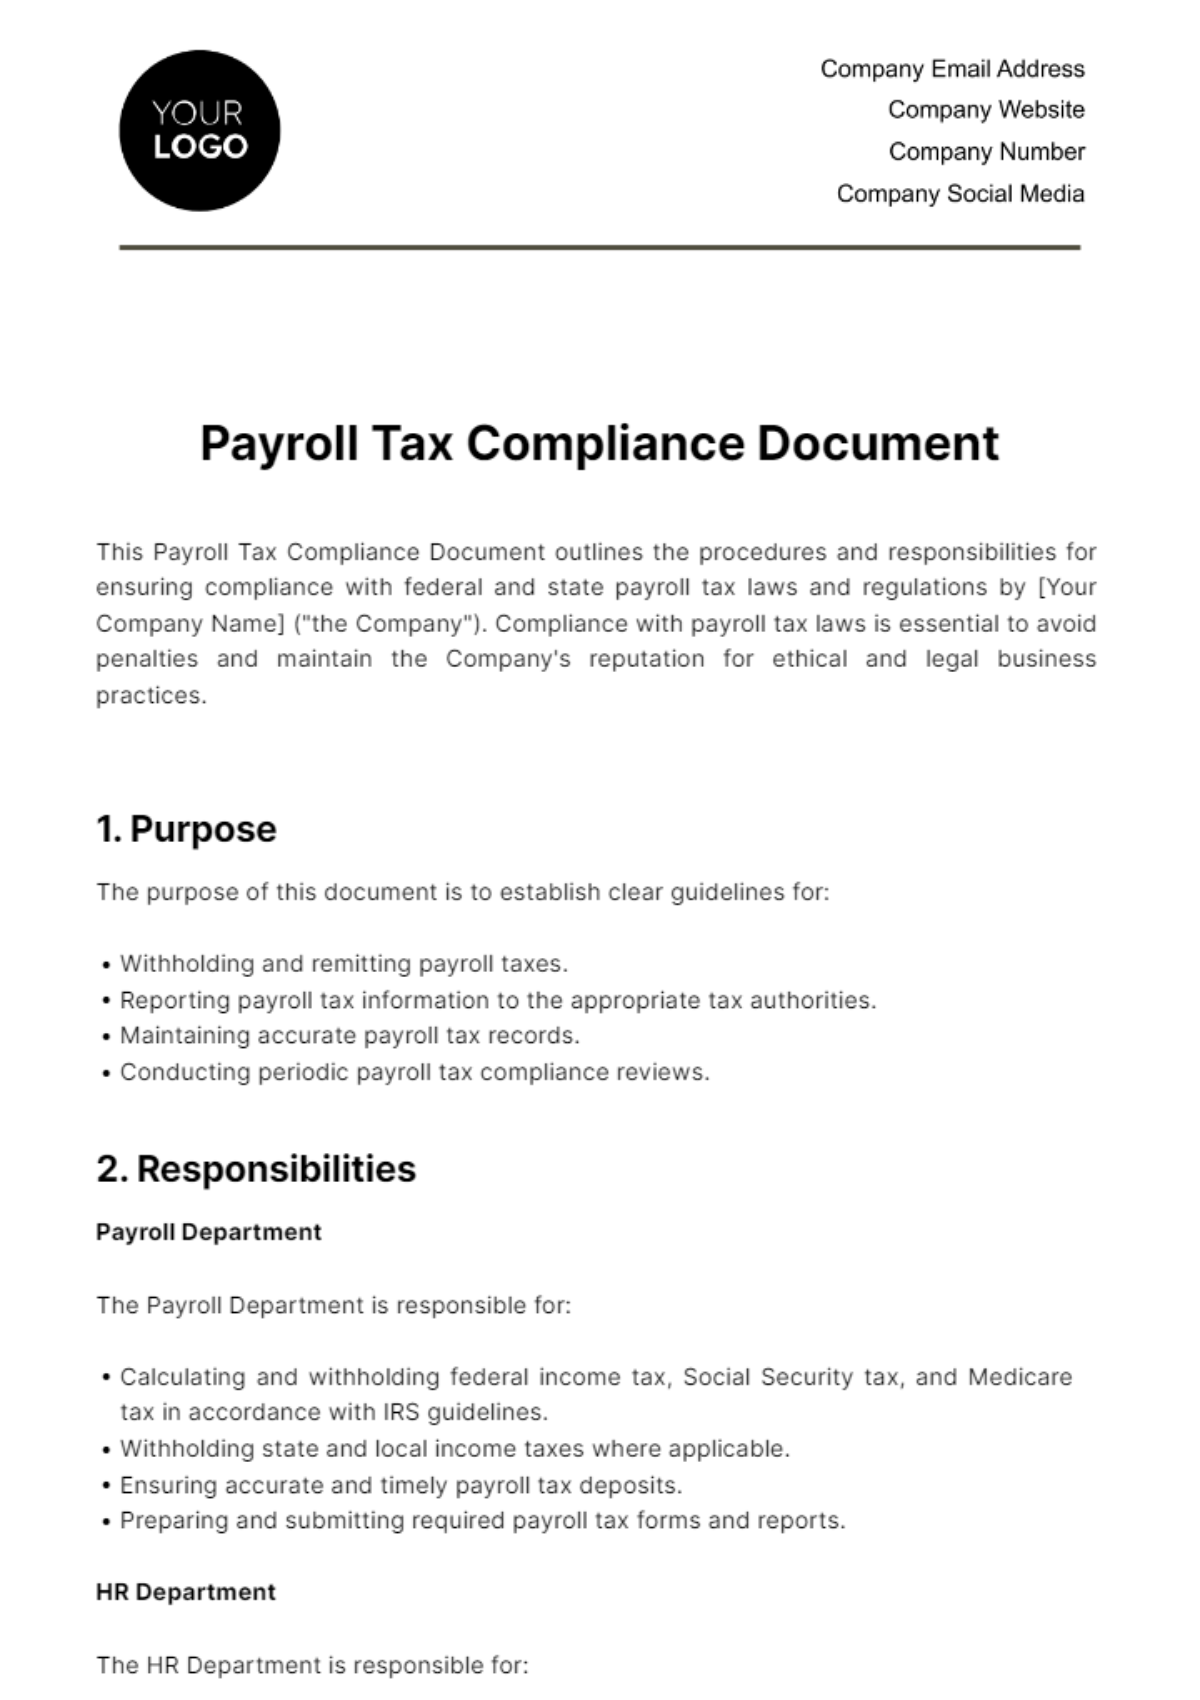 Payroll Tax Compliance Document HR Template